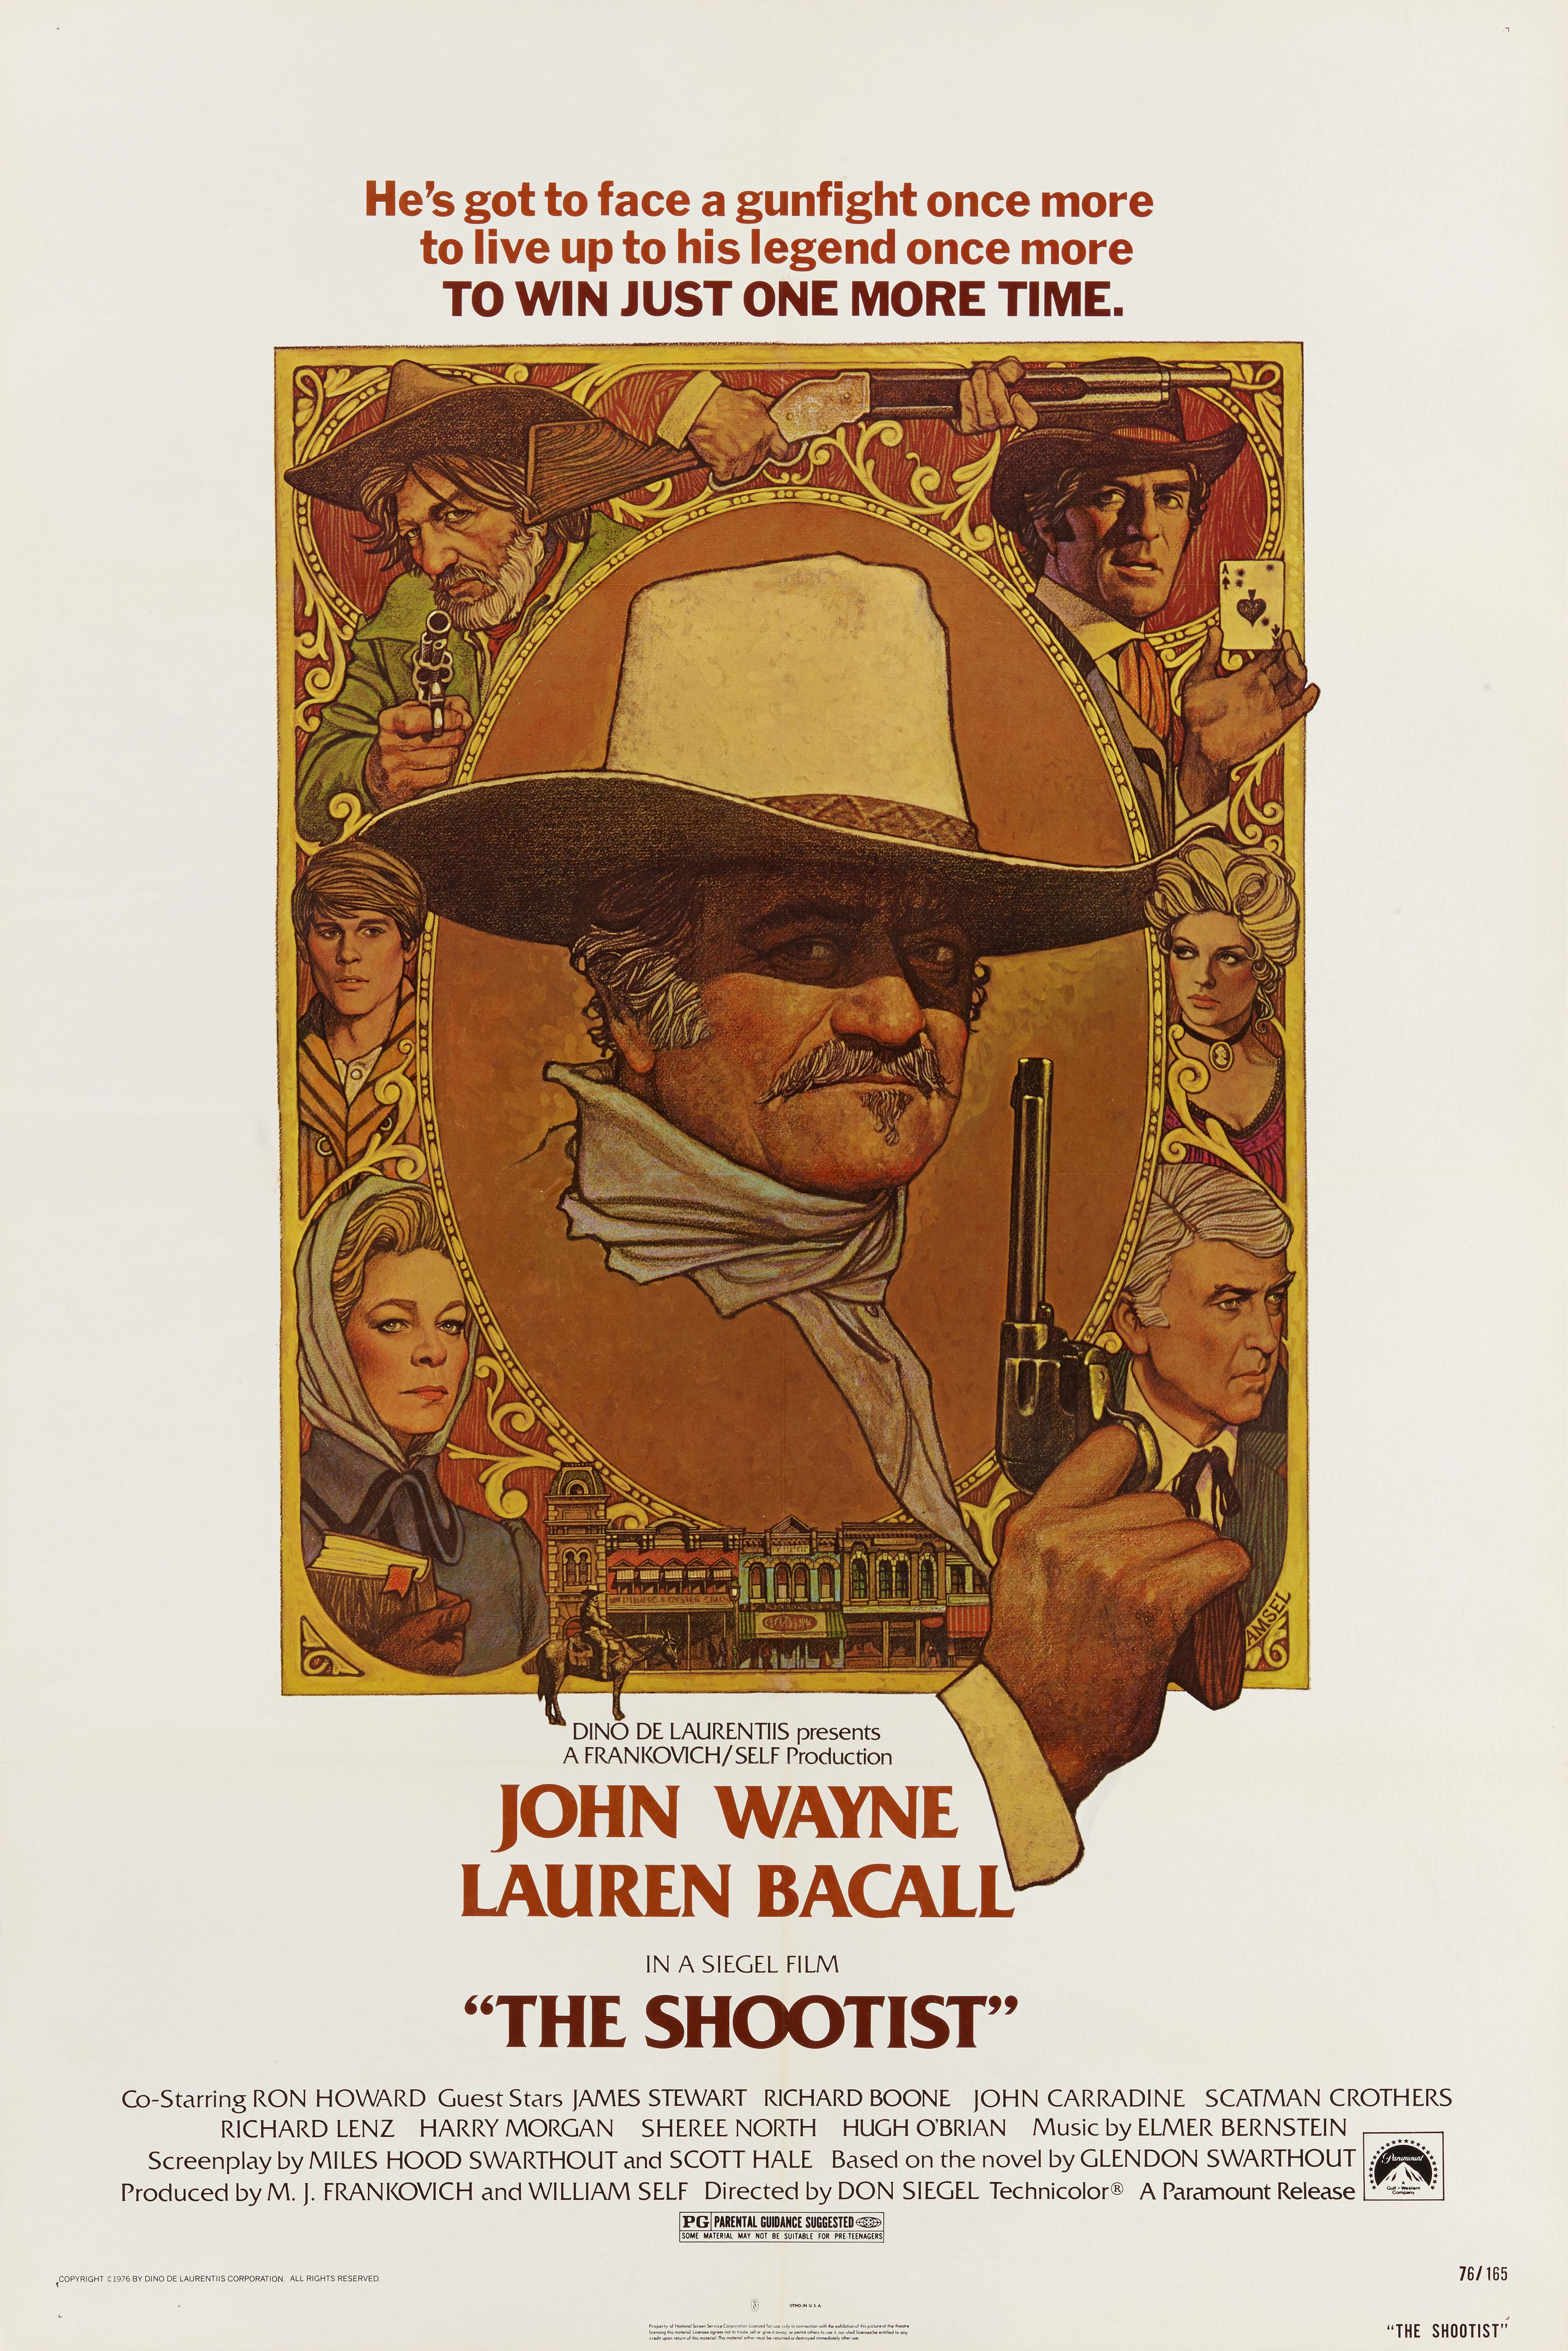 Original US-Filmplakat für John Waynes letzten Film The Shootist 1976.
Die Illustrationen stammen von dem hochgelobten Illustrator Richard Amsel (1947-1985).
Bei dem Film führte Don Siegel Regie.
Das Plakat ist in ausgezeichnetem Zustand und die